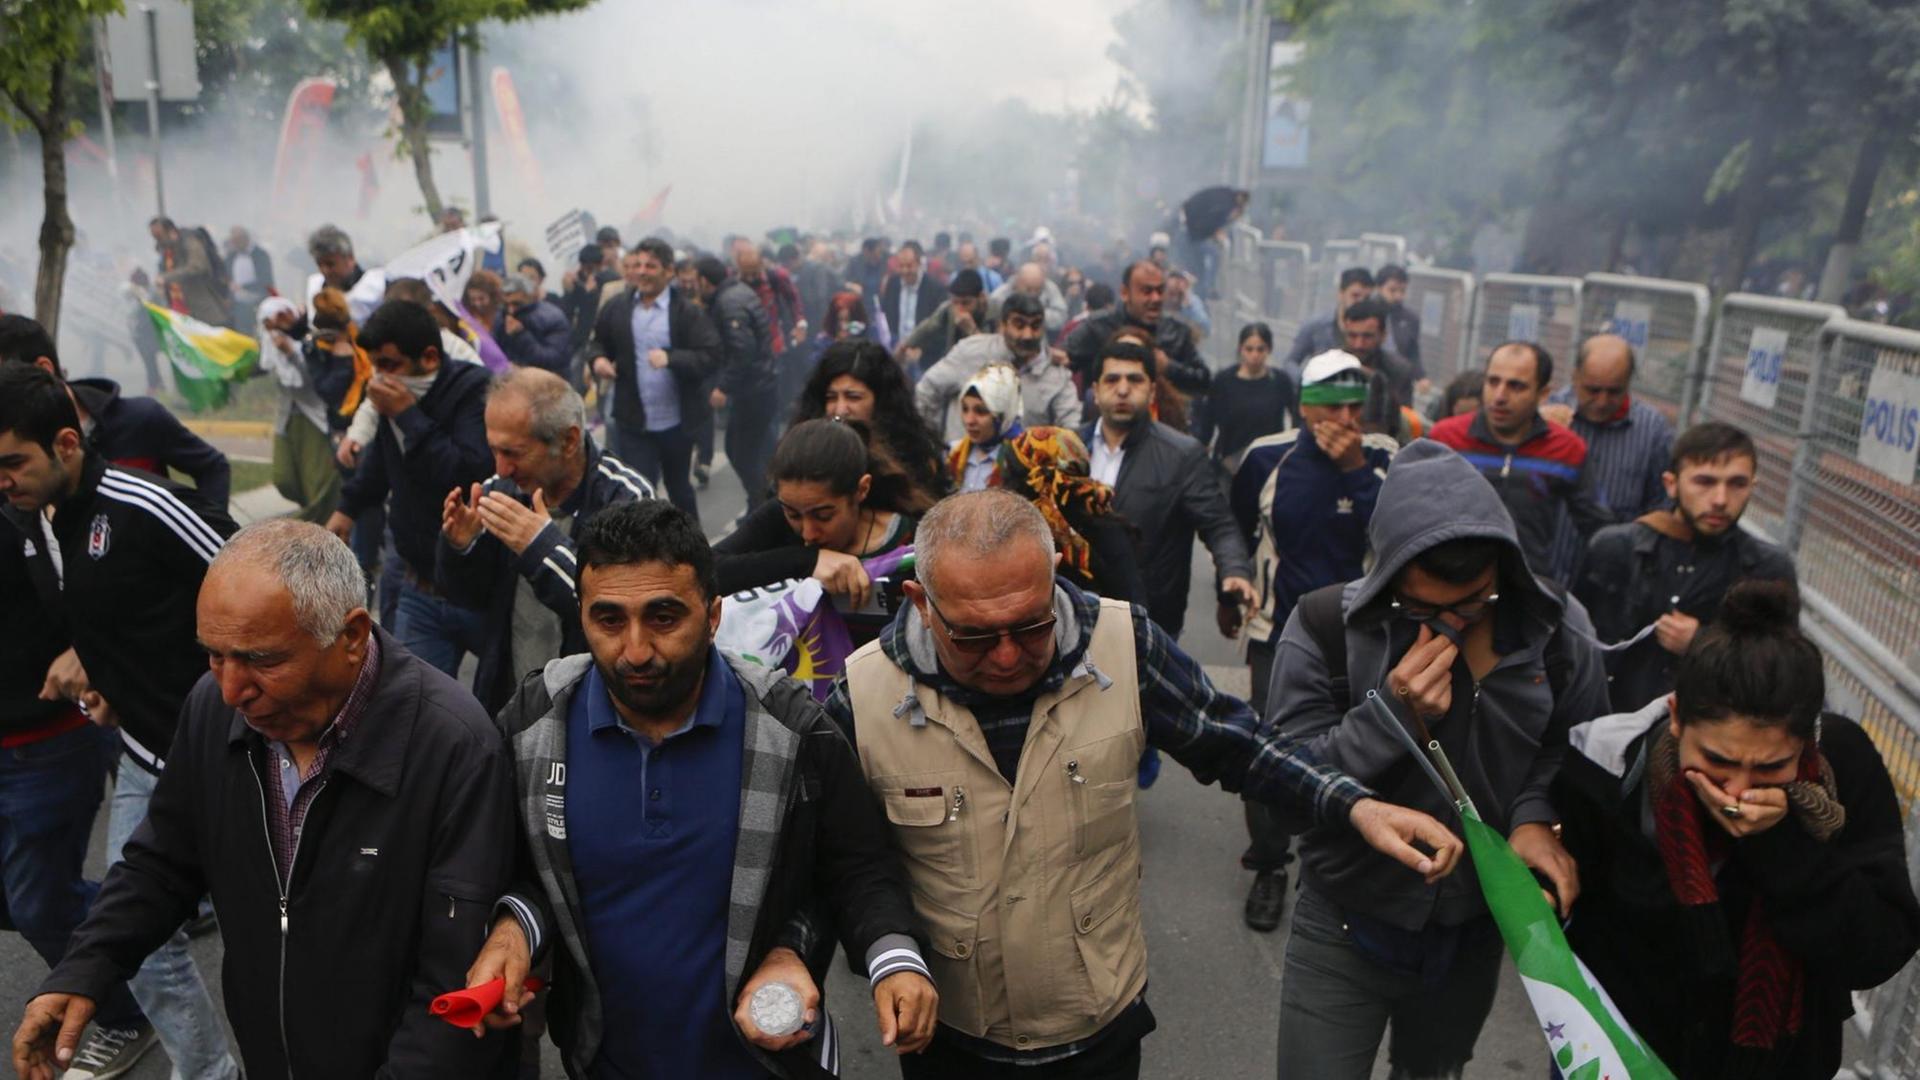 Demonstranten laufen in Richtung des Fotografen, halten den Kopf gesenkt, zum Teil die Hände vors Gesicht, im Hintergrund Tränengas.